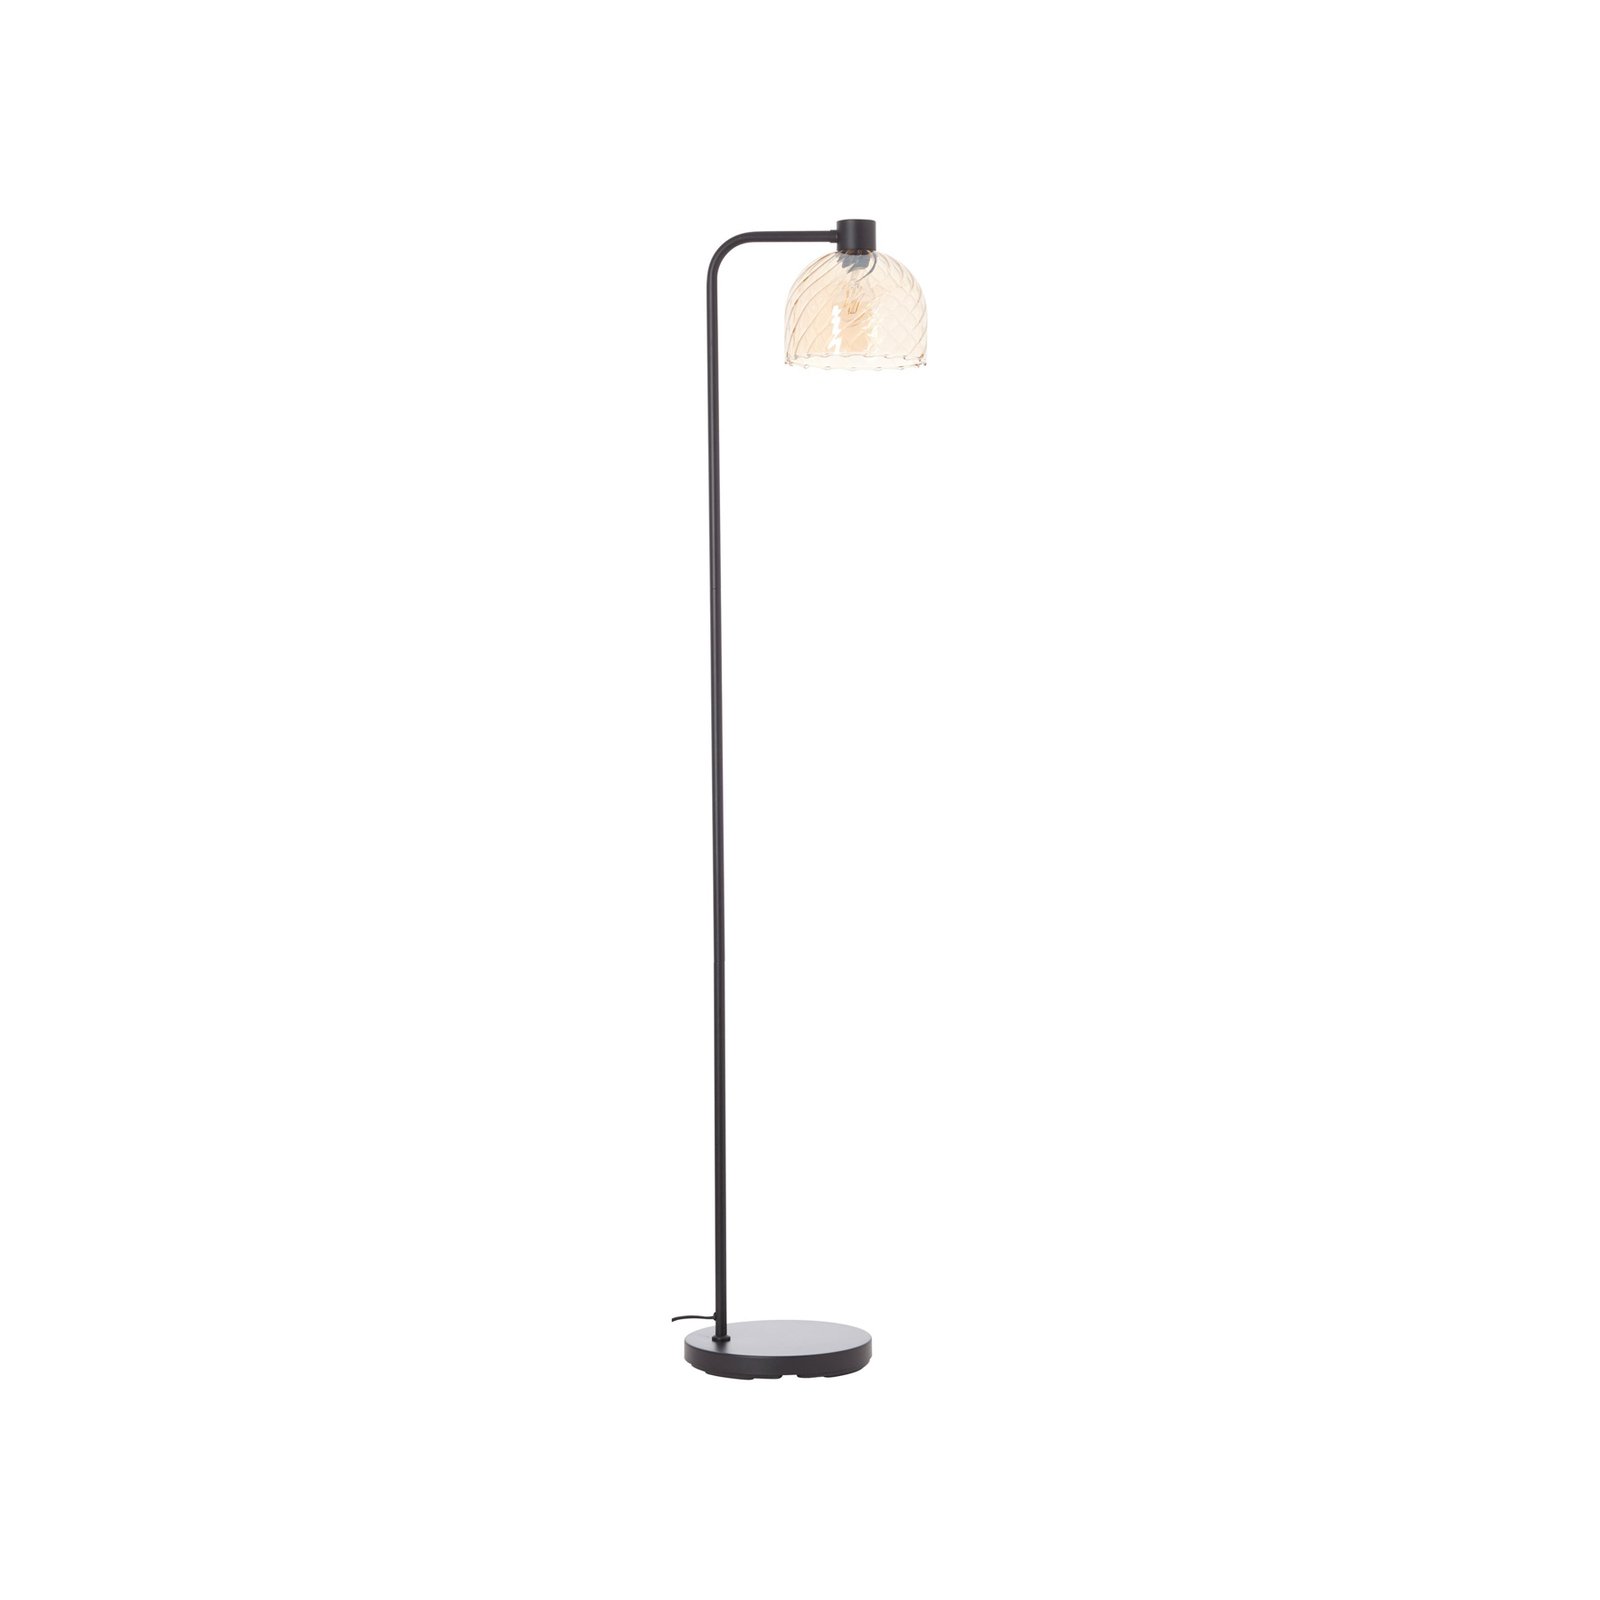 Stehlampe Casto, Höhe 150 cm, bernstein, Glas/Metall